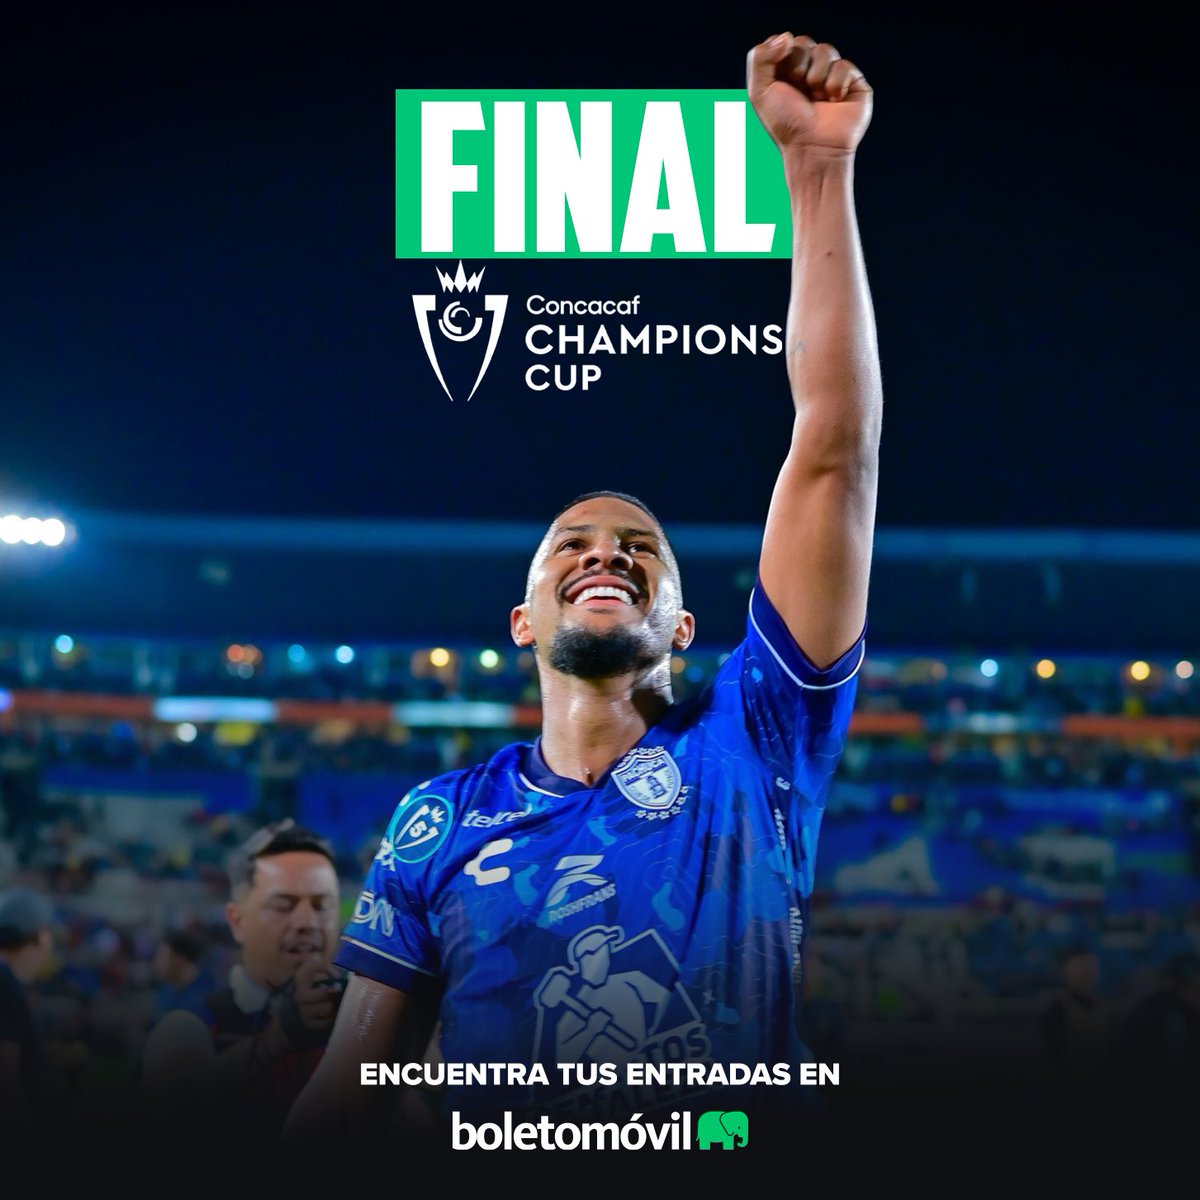 ¡No te pierdas la Final de CONCACAF CHAMPIONS CUP! 🏆⚽️ Te vemos este 1 de junio a las 7:15pm. @Tuzos vs Columbus Crew. 🔥 📍Estadio Hidalgo. 🎟️ Compra tus boletos aquí: bit.ly/3K6FMRQ